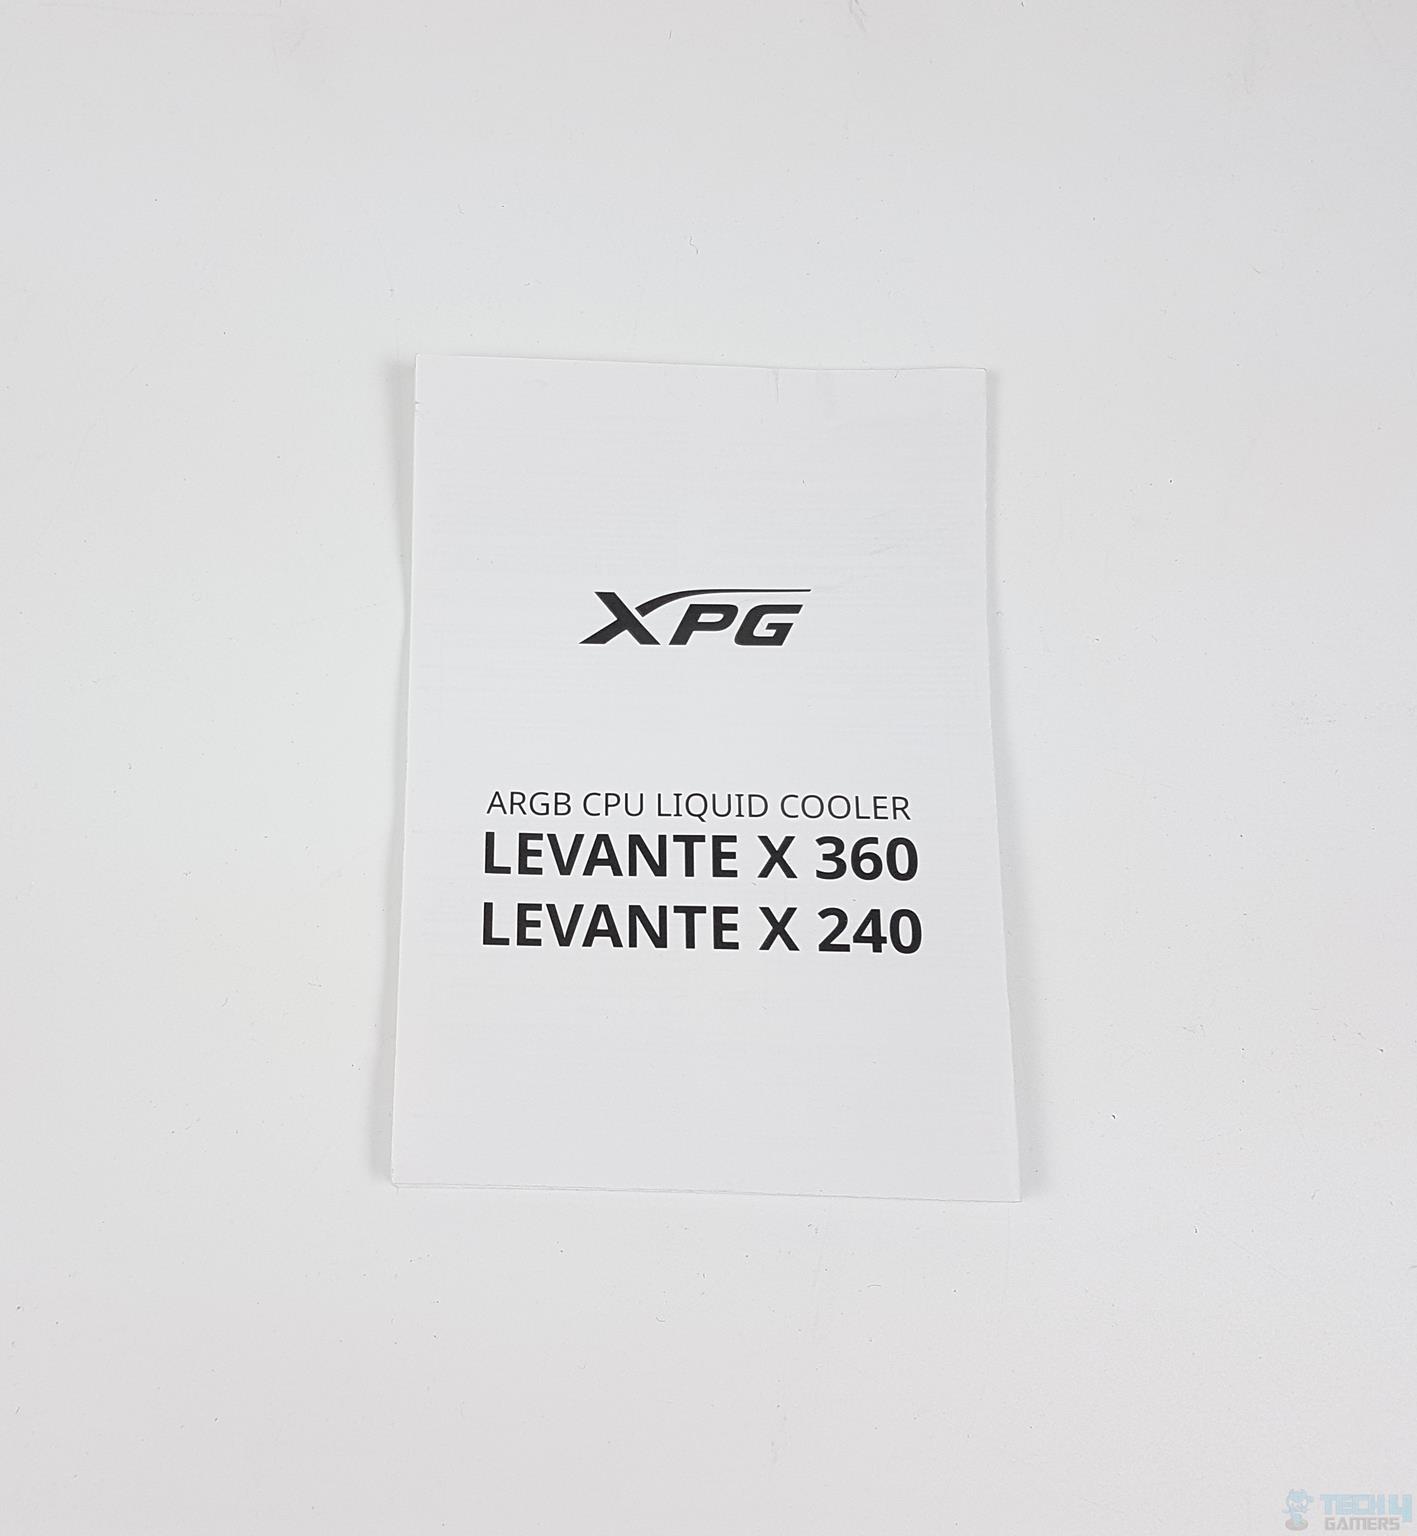 XPG Levante X 360 Liquid Cooler — User Guide